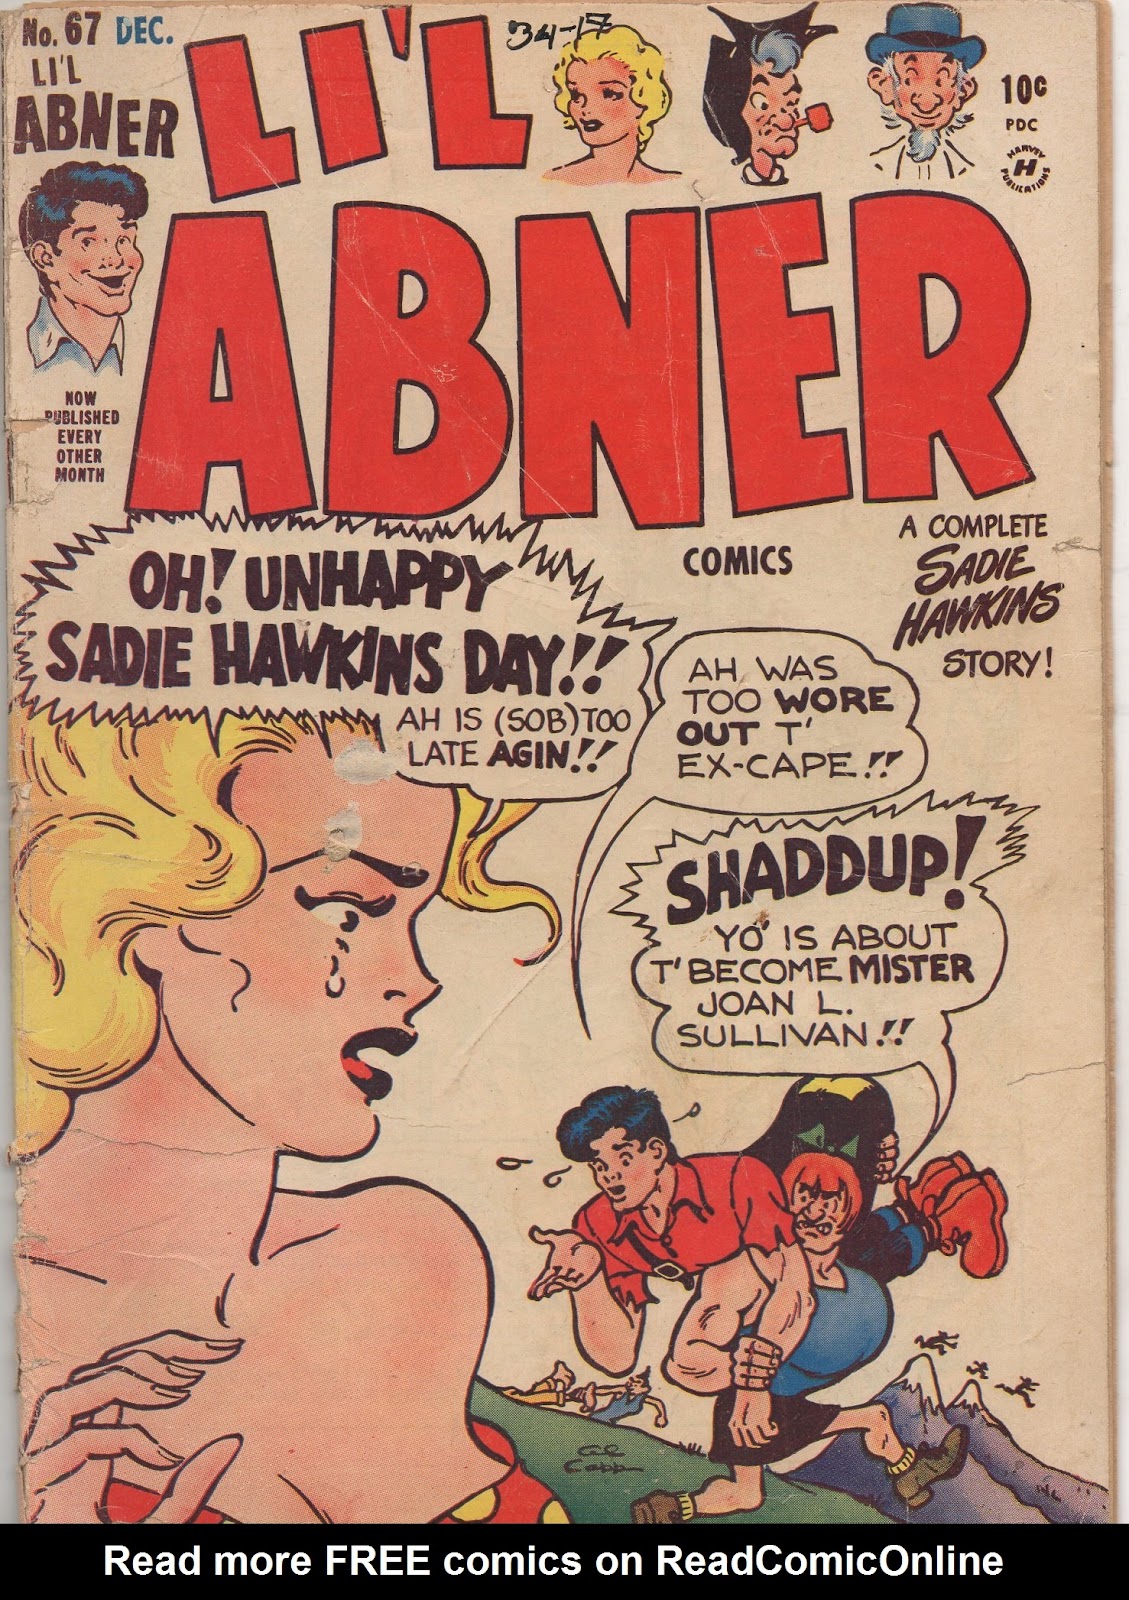 Li'l Abner Comics issue 67 - Page 1